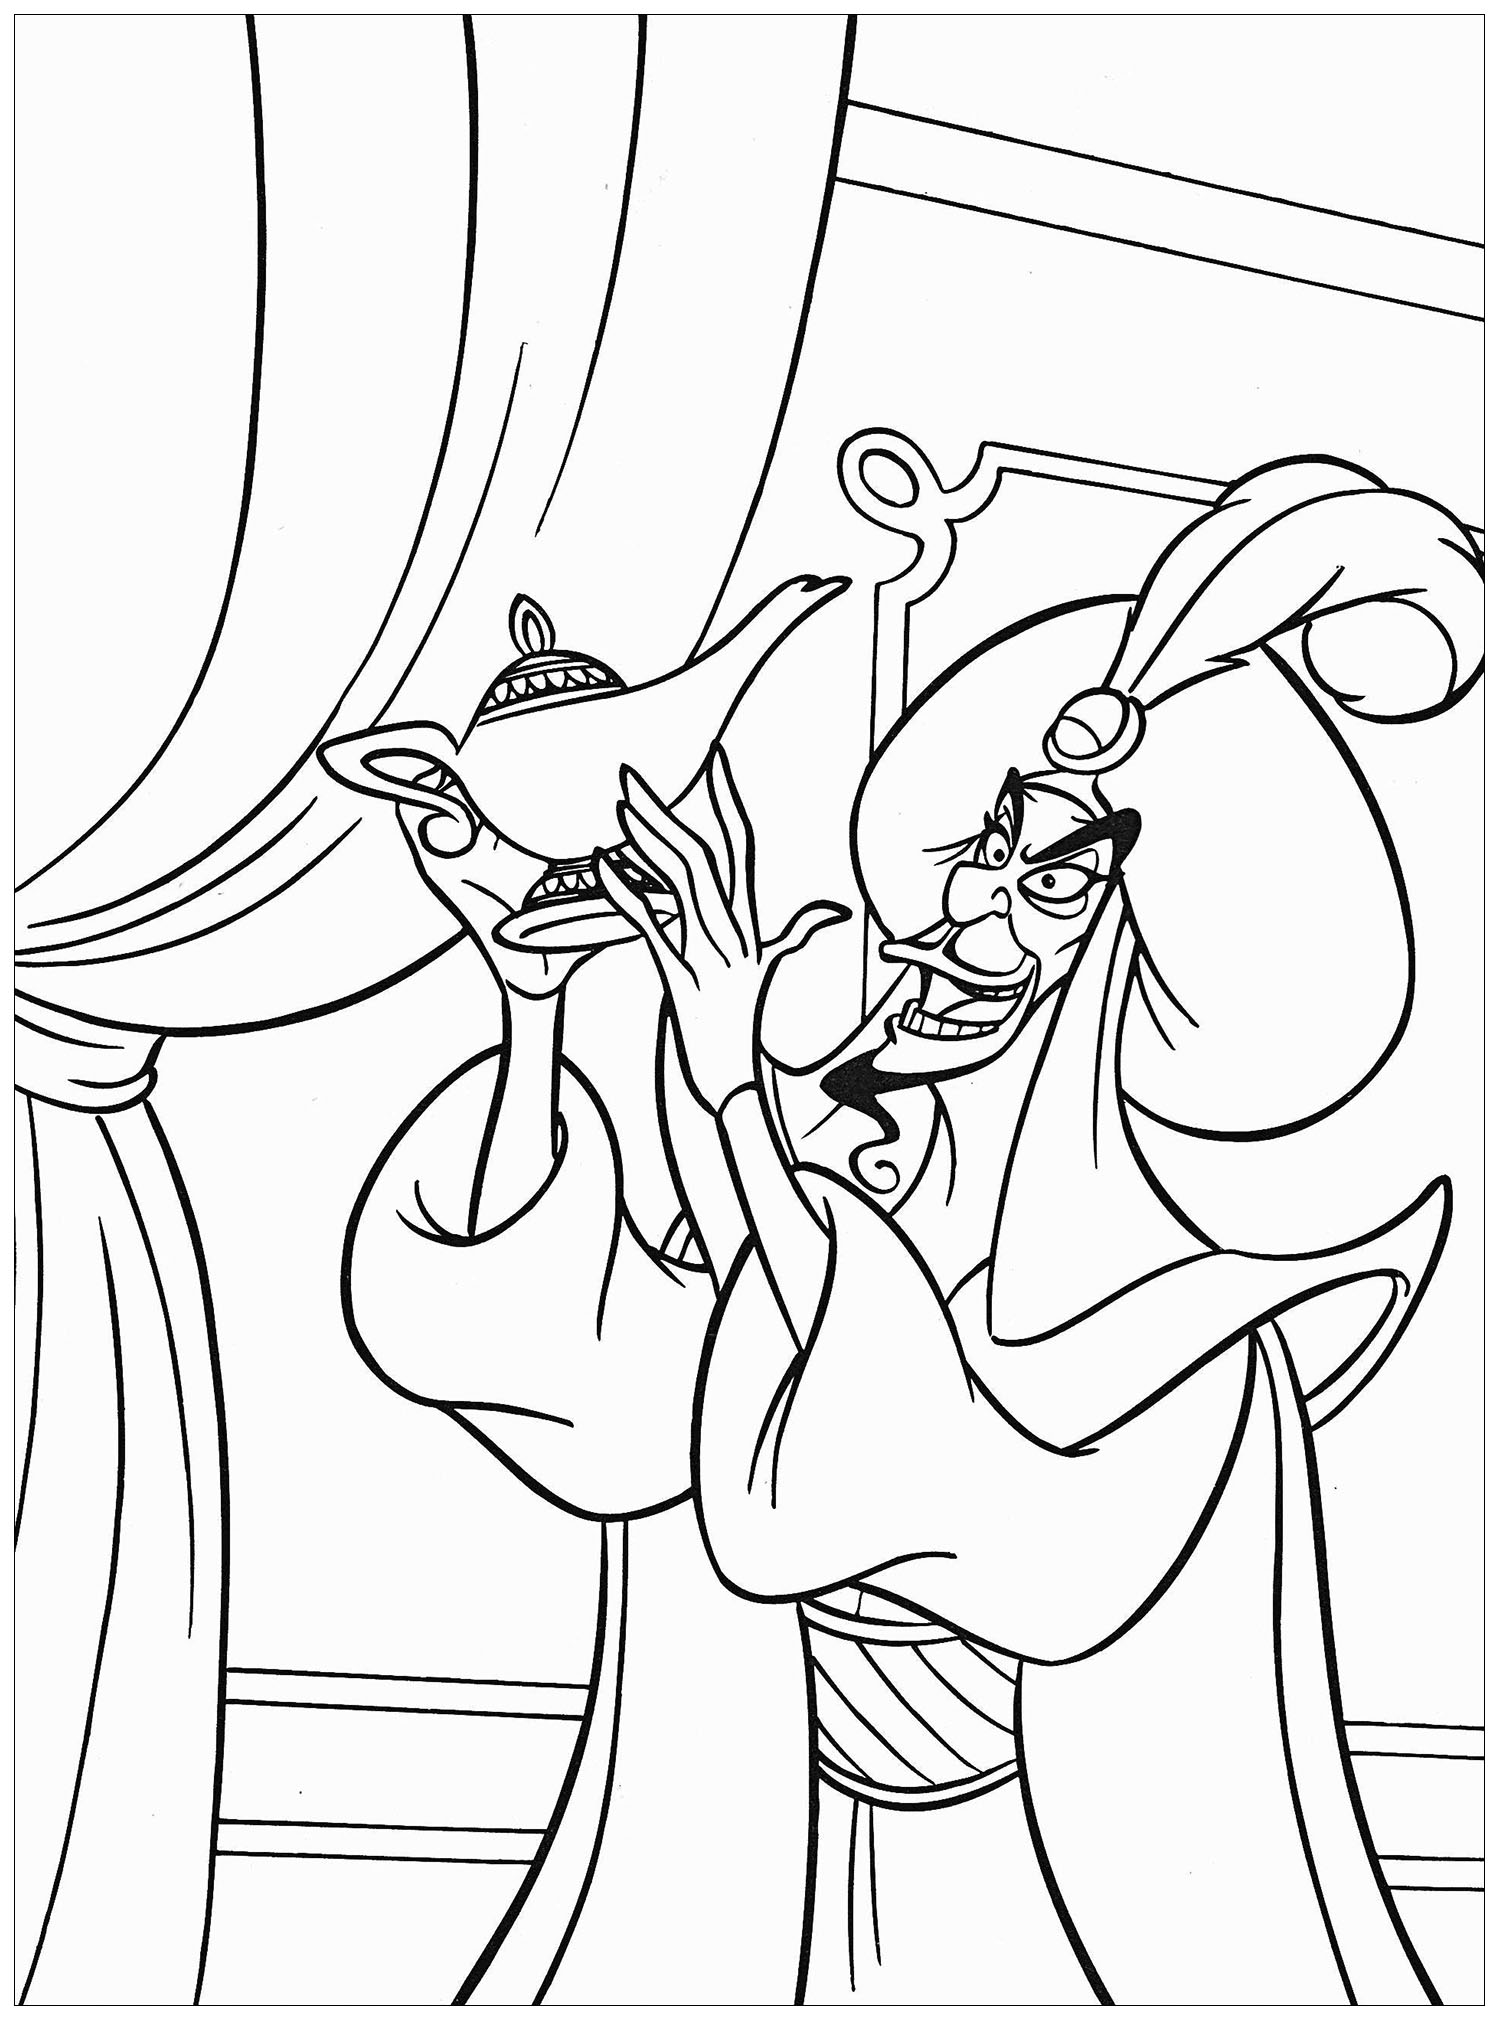 Jafar and the magic lamp